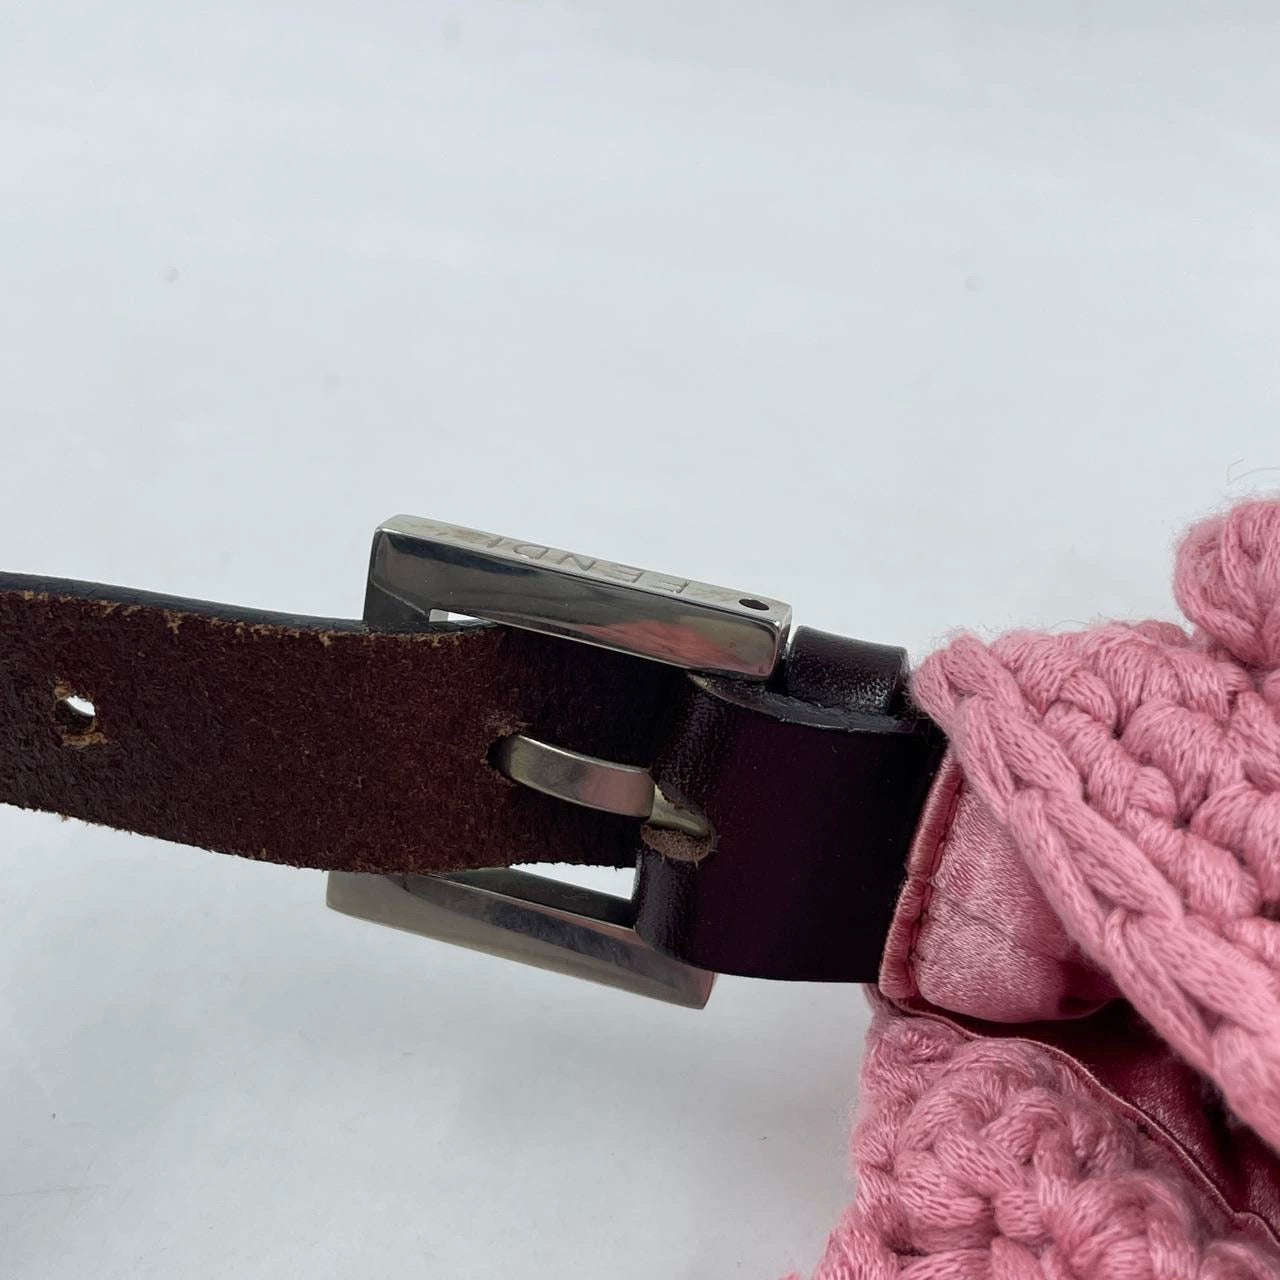 Fendi Baguette Bag Pink Crochet Knit Wool Pompom Shoulder Bag